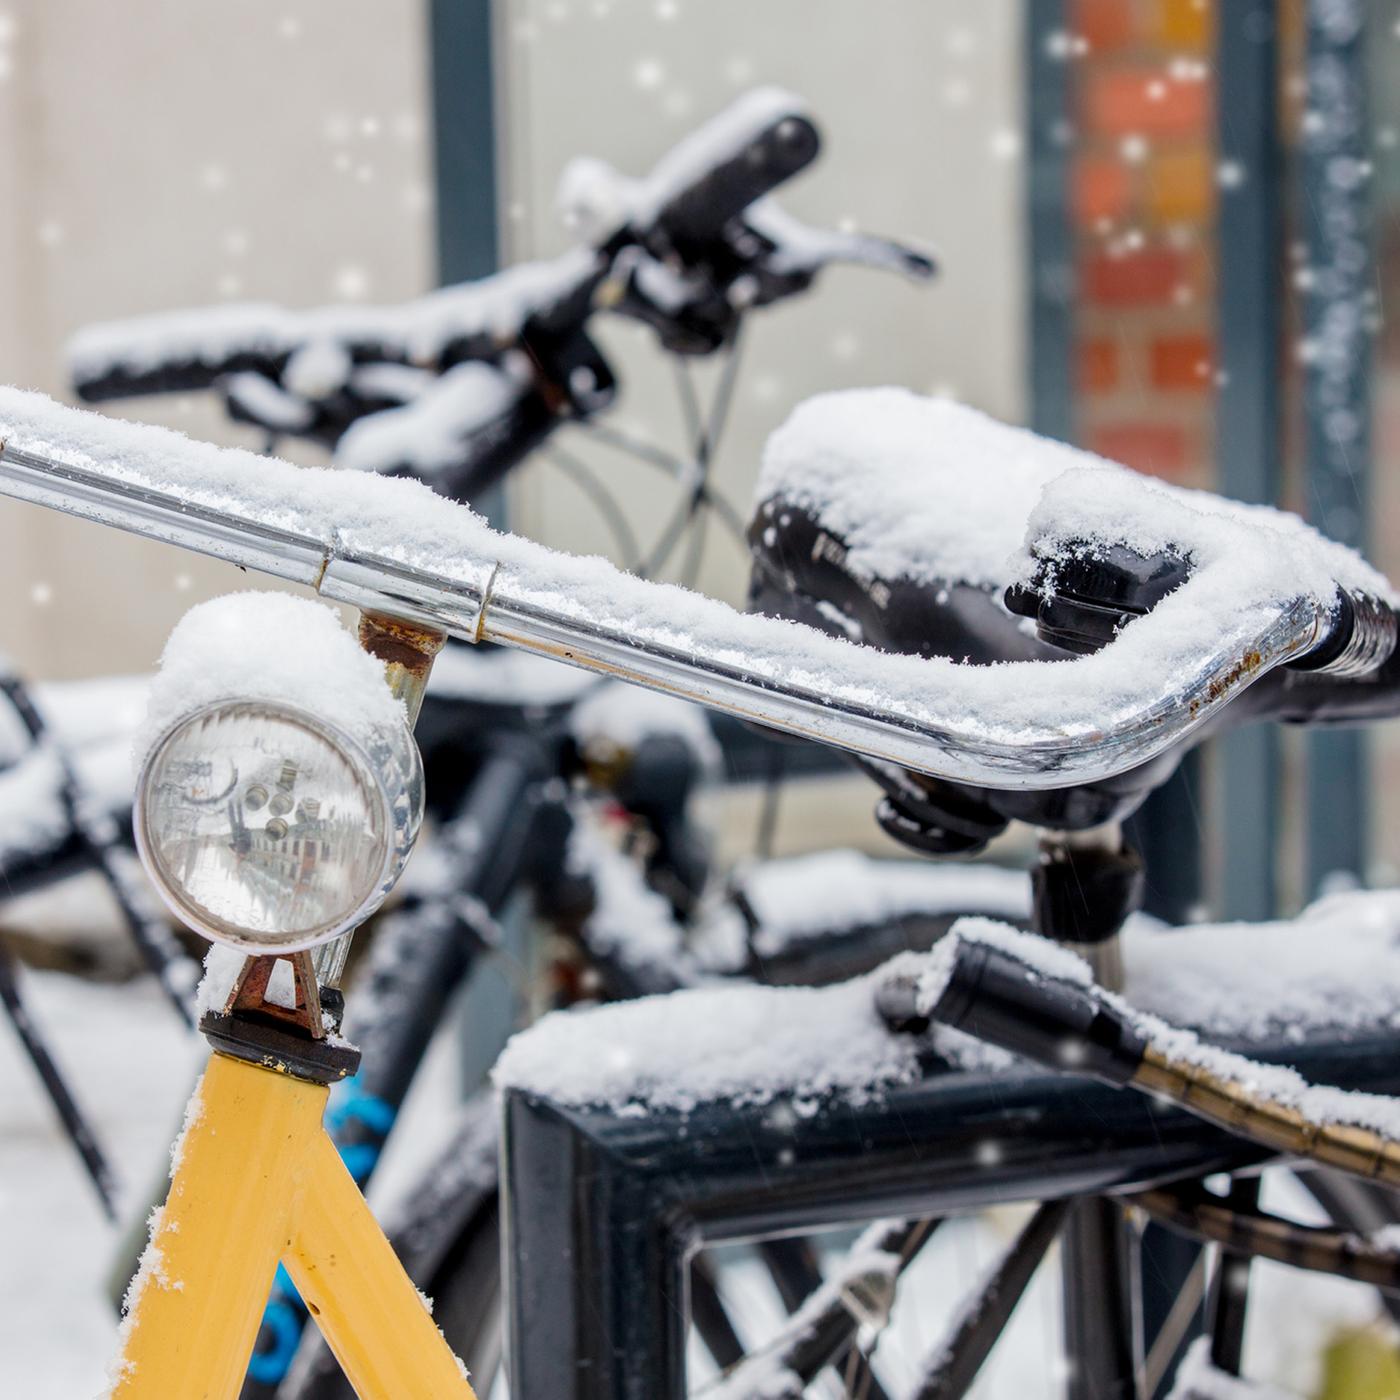 Fahrradschloss ist zugefroren: Was hilft?